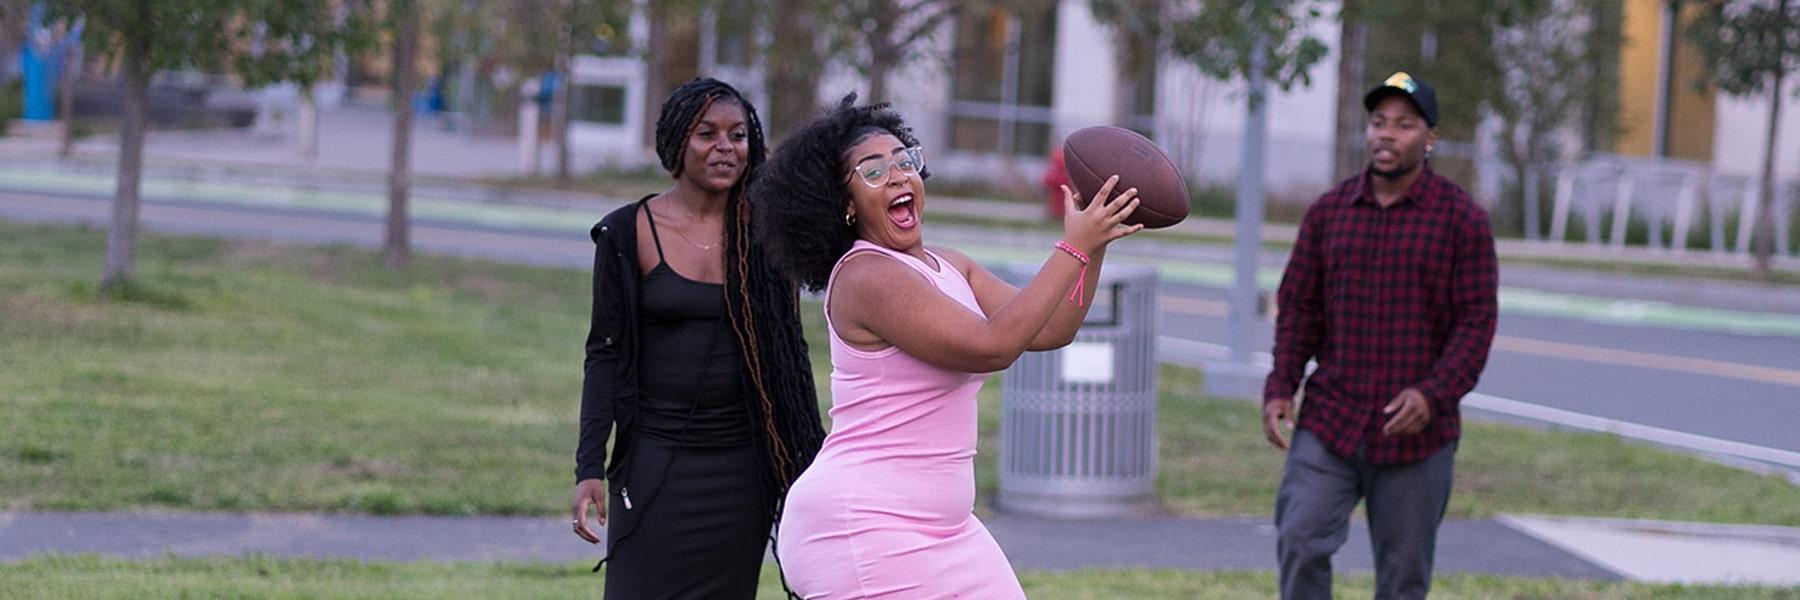 在第一个星期五的活动校园中心草坪上，穿着粉红色连衣裙的女孩抓住了足球.